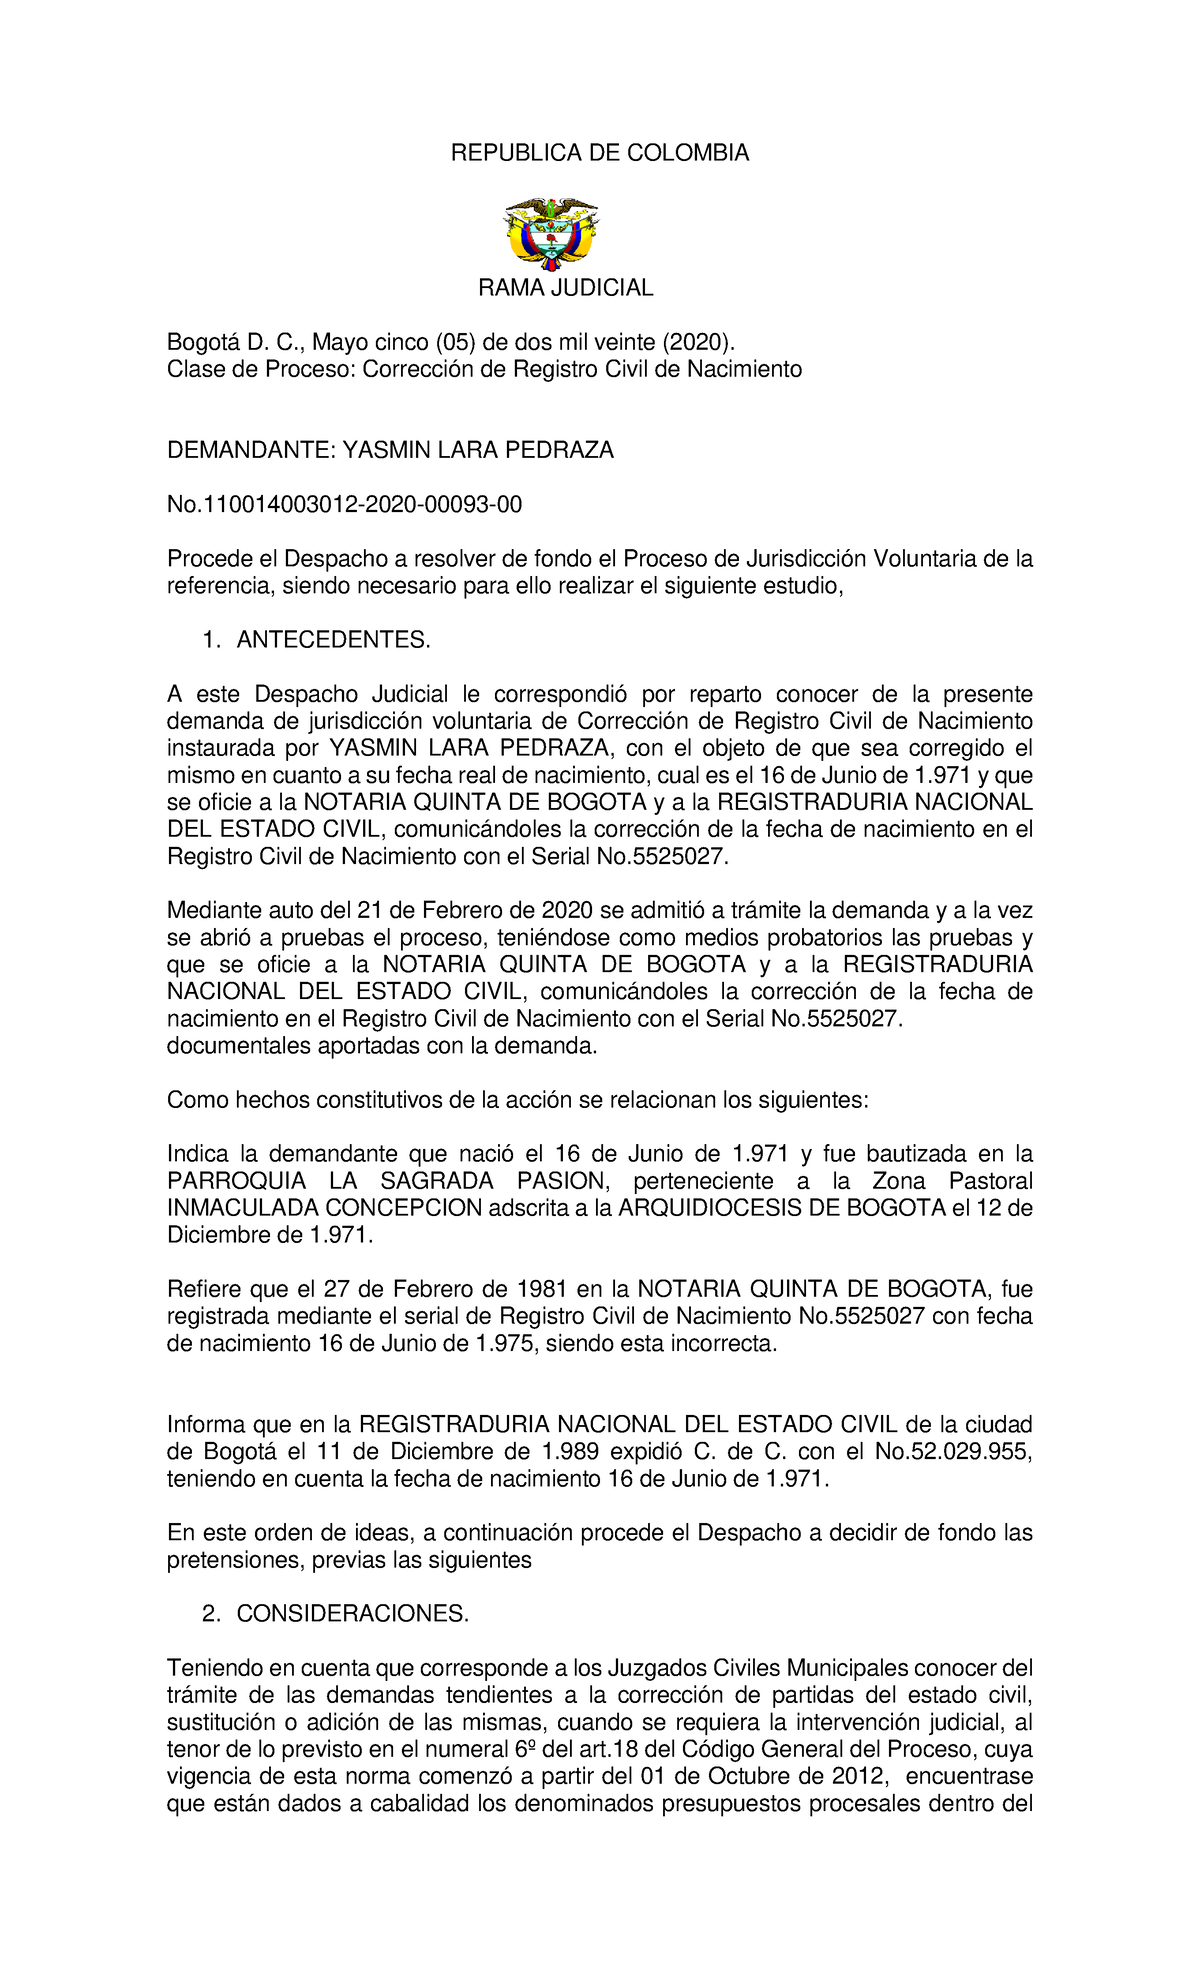 Sentencia correccion registro civil - REPUBLICA DE COLOMBIA RAMA JUDICIAL  Bogotá D. C., Mayo cinco - Studocu